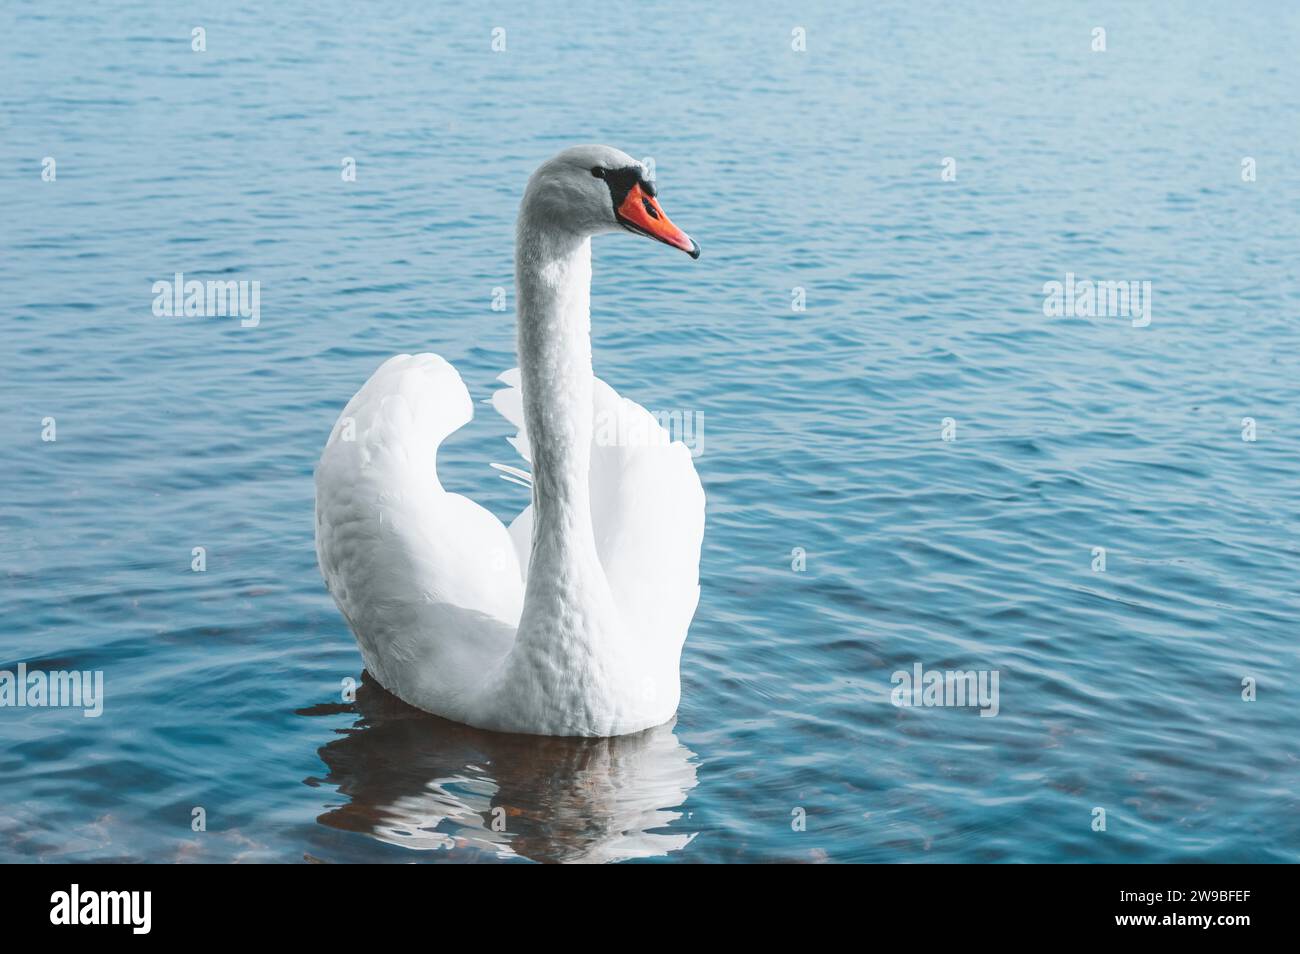 Il bel cigno nuota sul lago al sole del mattino. Simbolo di famiglia, amore, purezza. Supporti misti Foto Stock